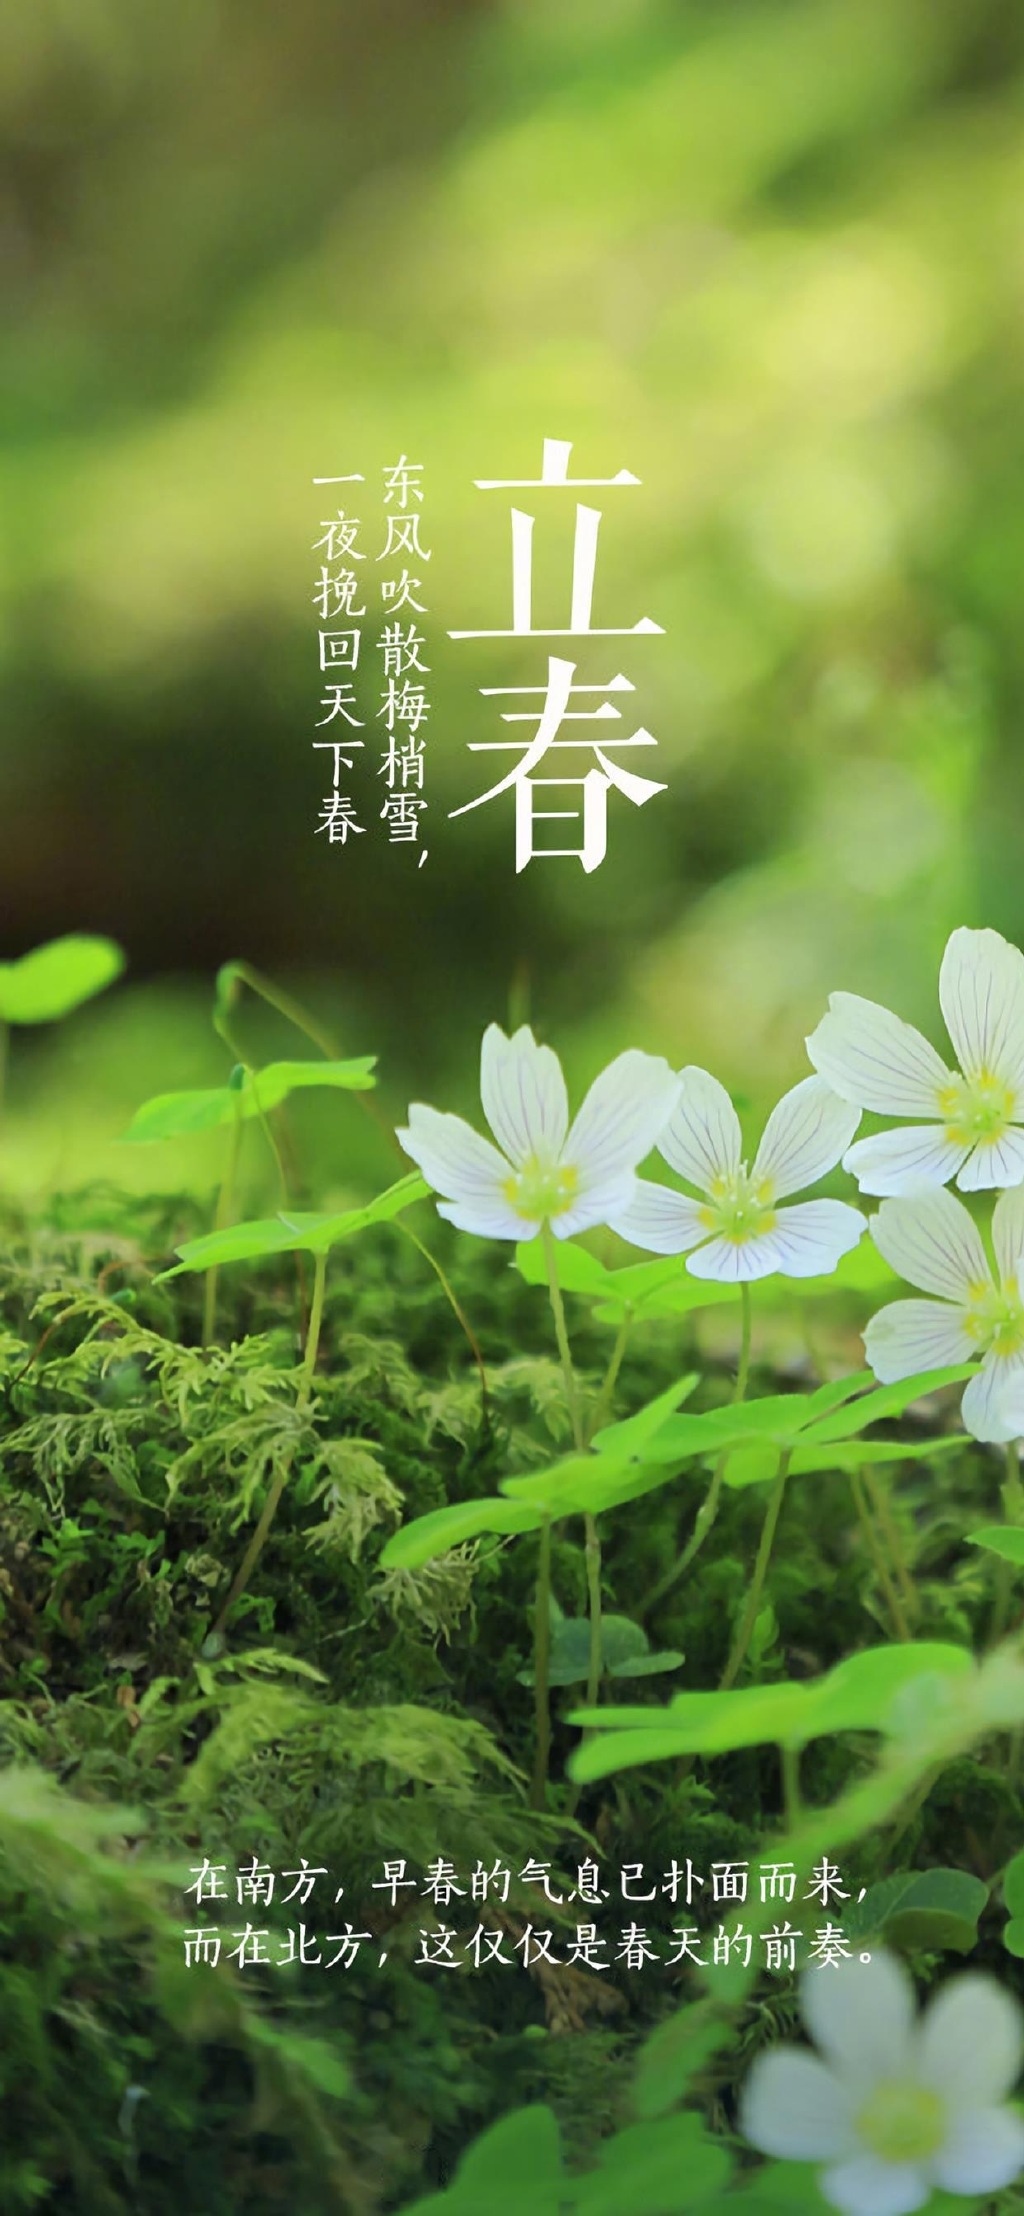 Nature Lichun Vertical Seasons Chinese Flowers 1024x2216